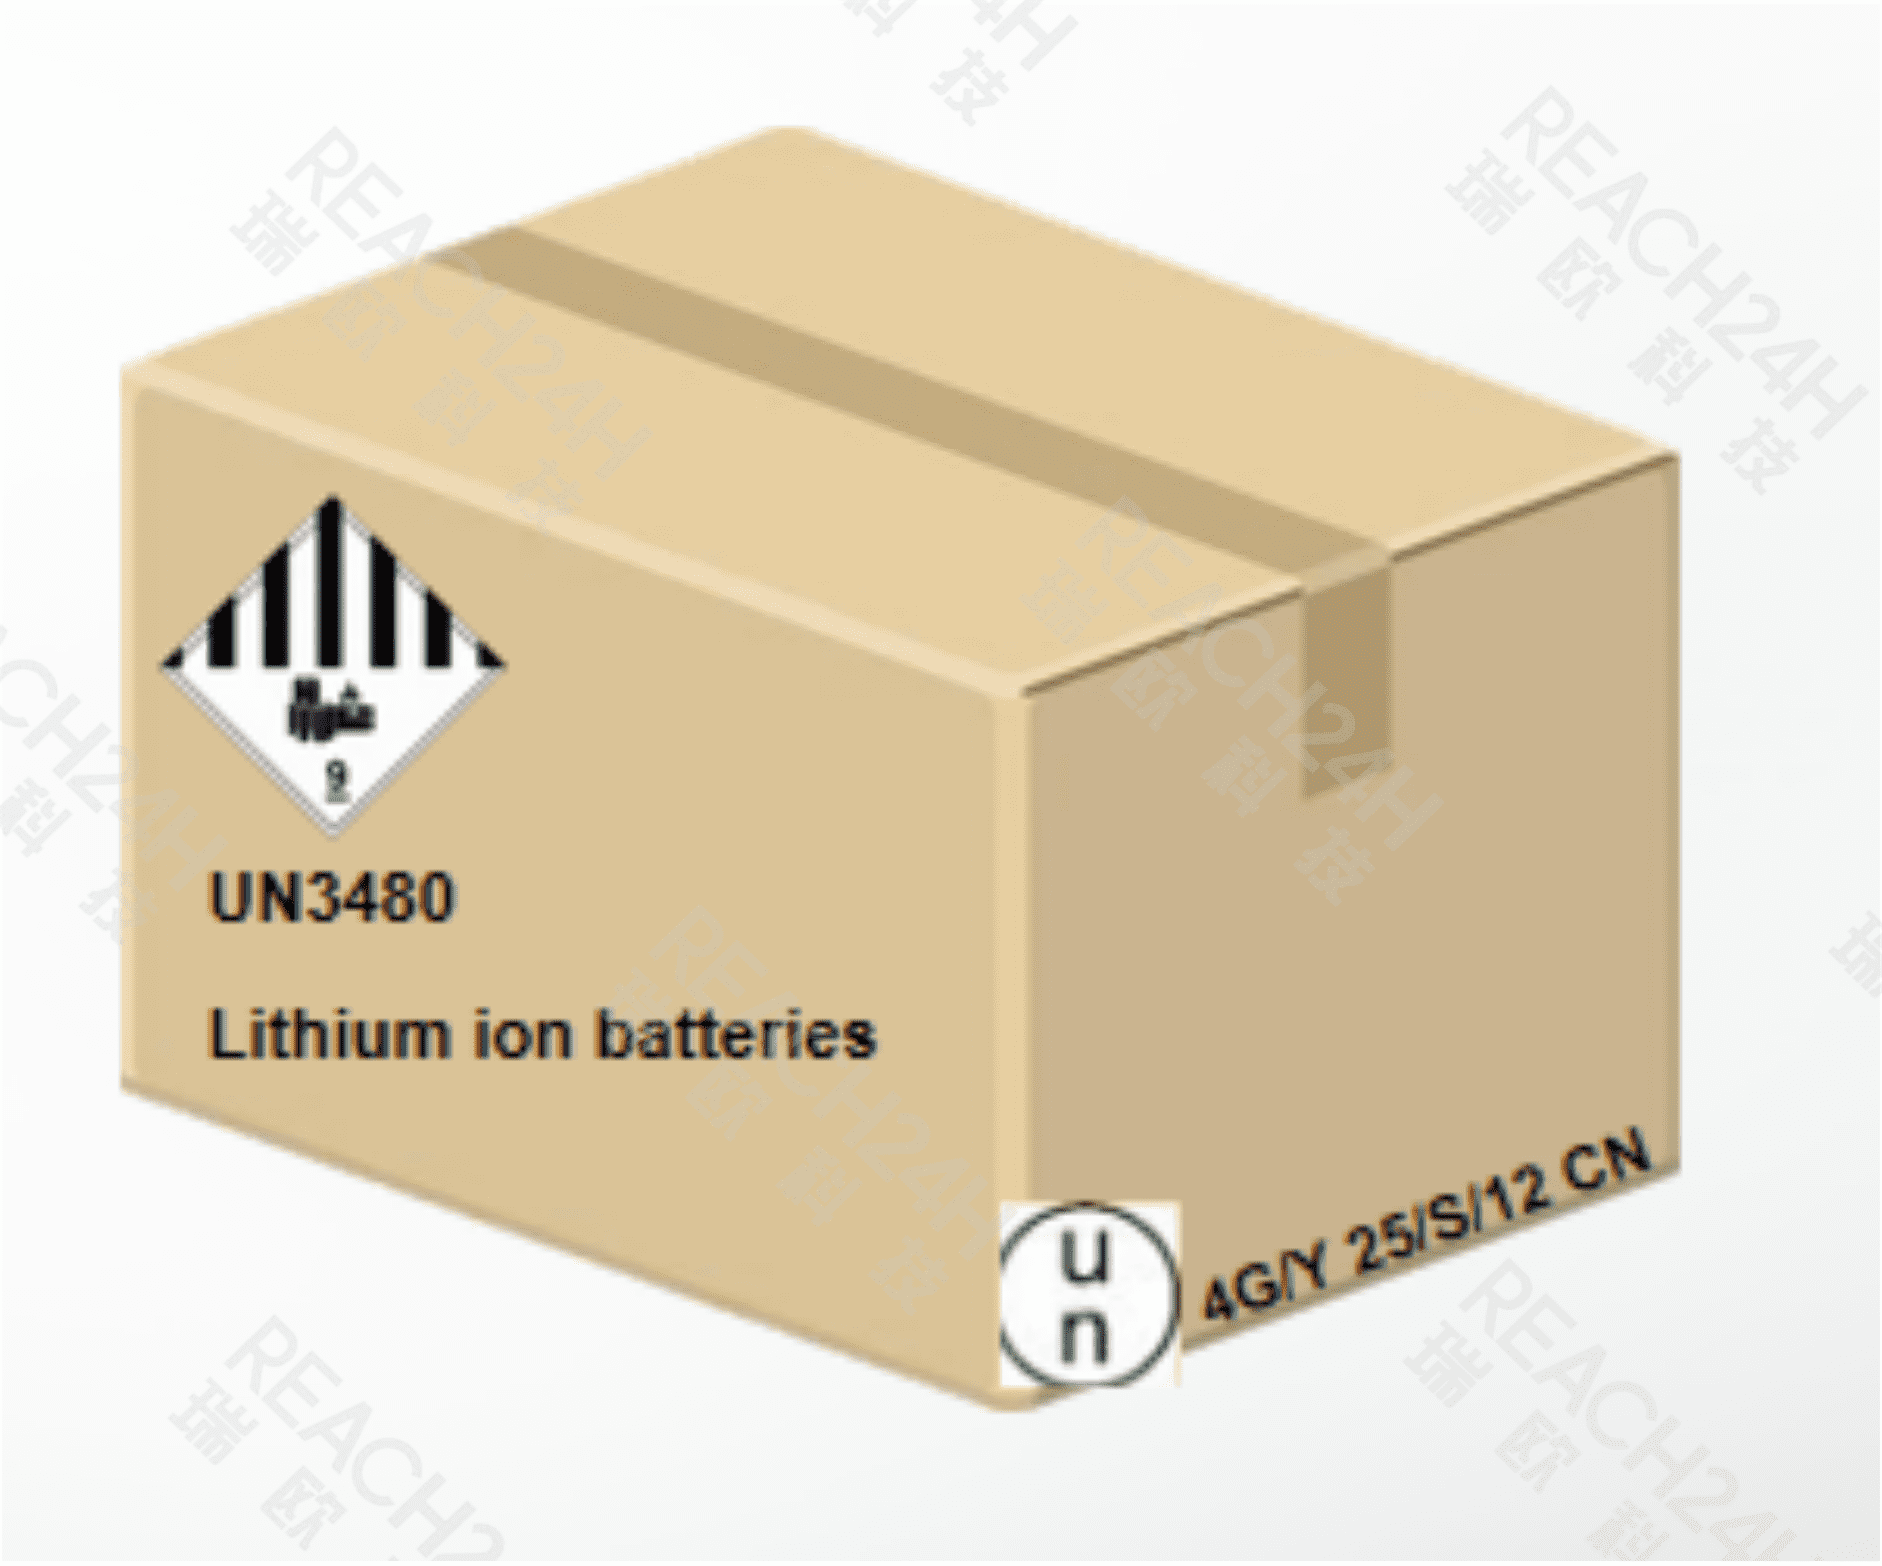 锂离子电池的外包装标签标记要求